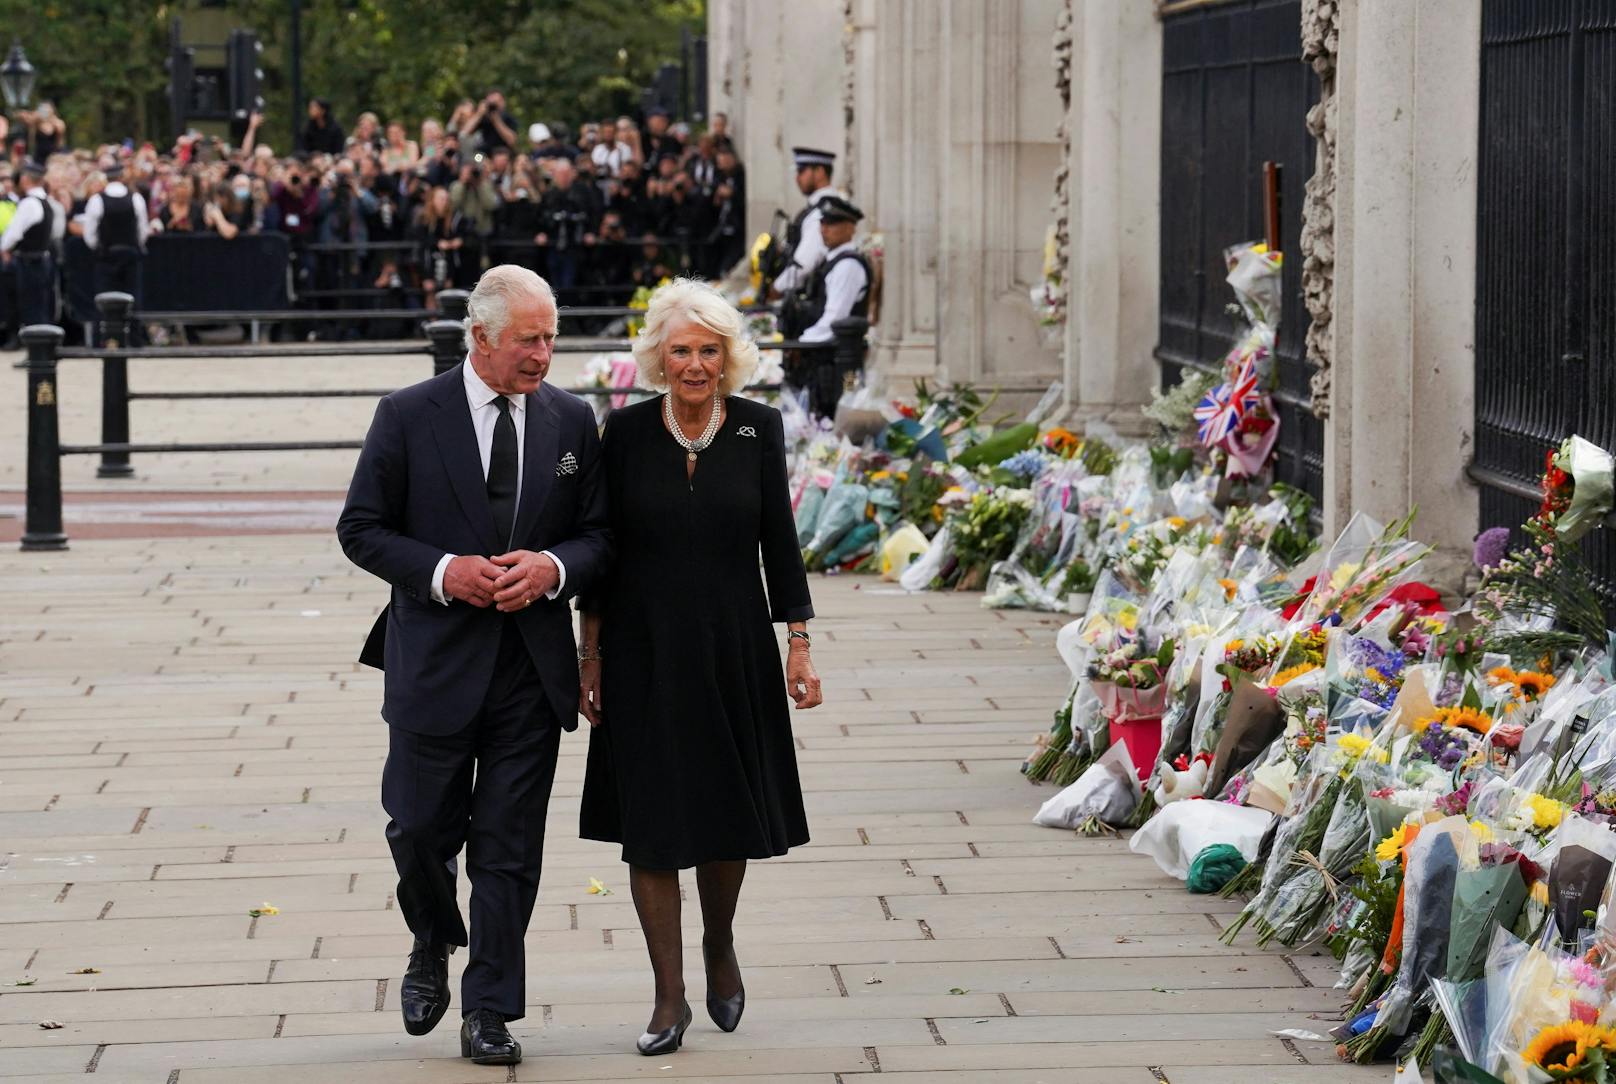 König Charles und Camilla schreiten gemeinsam den Zaun des Buckingham-Palastes entlang, wo unzählige Blumensträusse niedergelegt wurden.